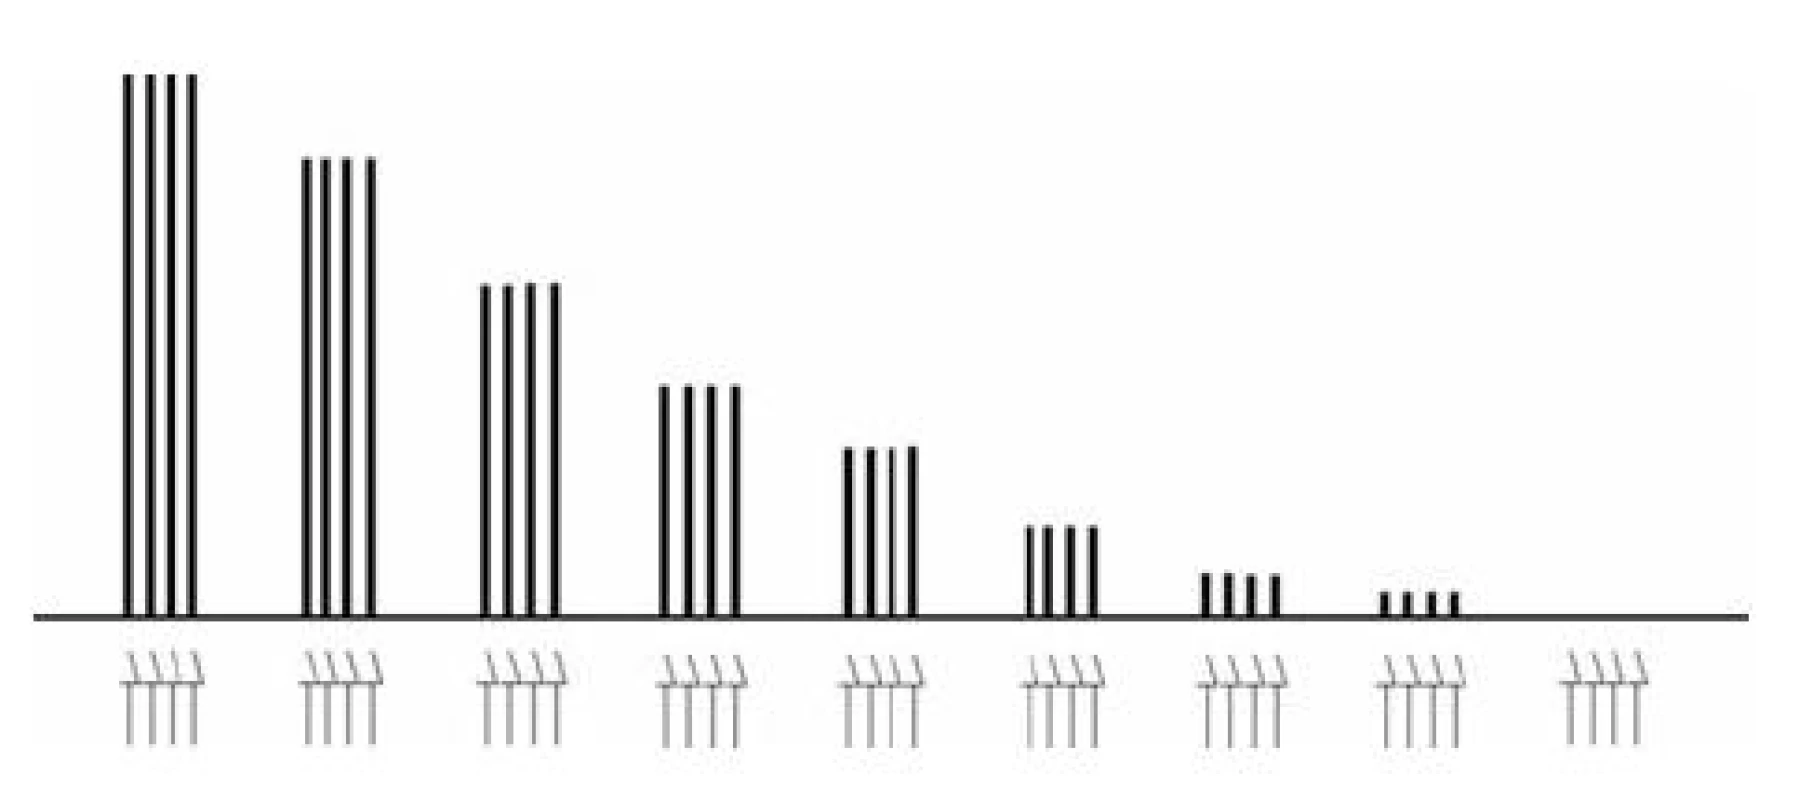 Nástup depolarizační blokády při opakovaných vyšetřeních v režimu TOF
Šipky označují jednotlivé elektrické impulzy v sériích TOF, sloupce vyjadřují velikost korespondujících svalových odpovědí. Chybí únava (fade), TOF-ratio (T4/T1) je po celou dobu monitorování 1,0.